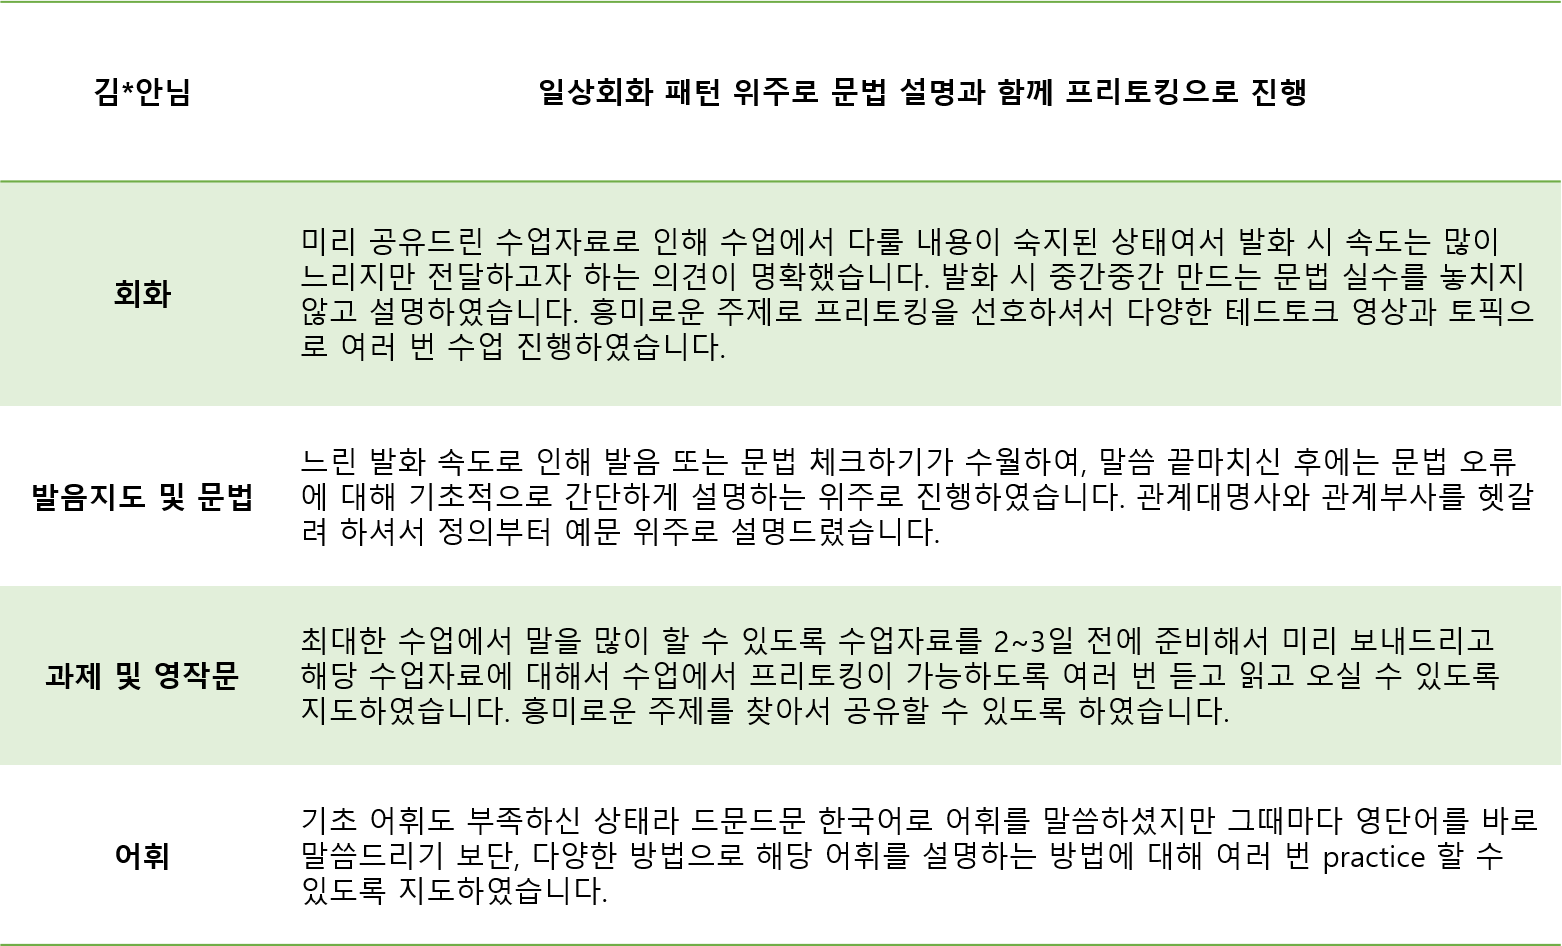 한국어를 영어로 자연스럽게 바꾸는 연습이 도움이 많이 되었어요!! : 삼성 임직원 선호도 92.3% | 수강생 자필 수강후기 |  오피아어학원